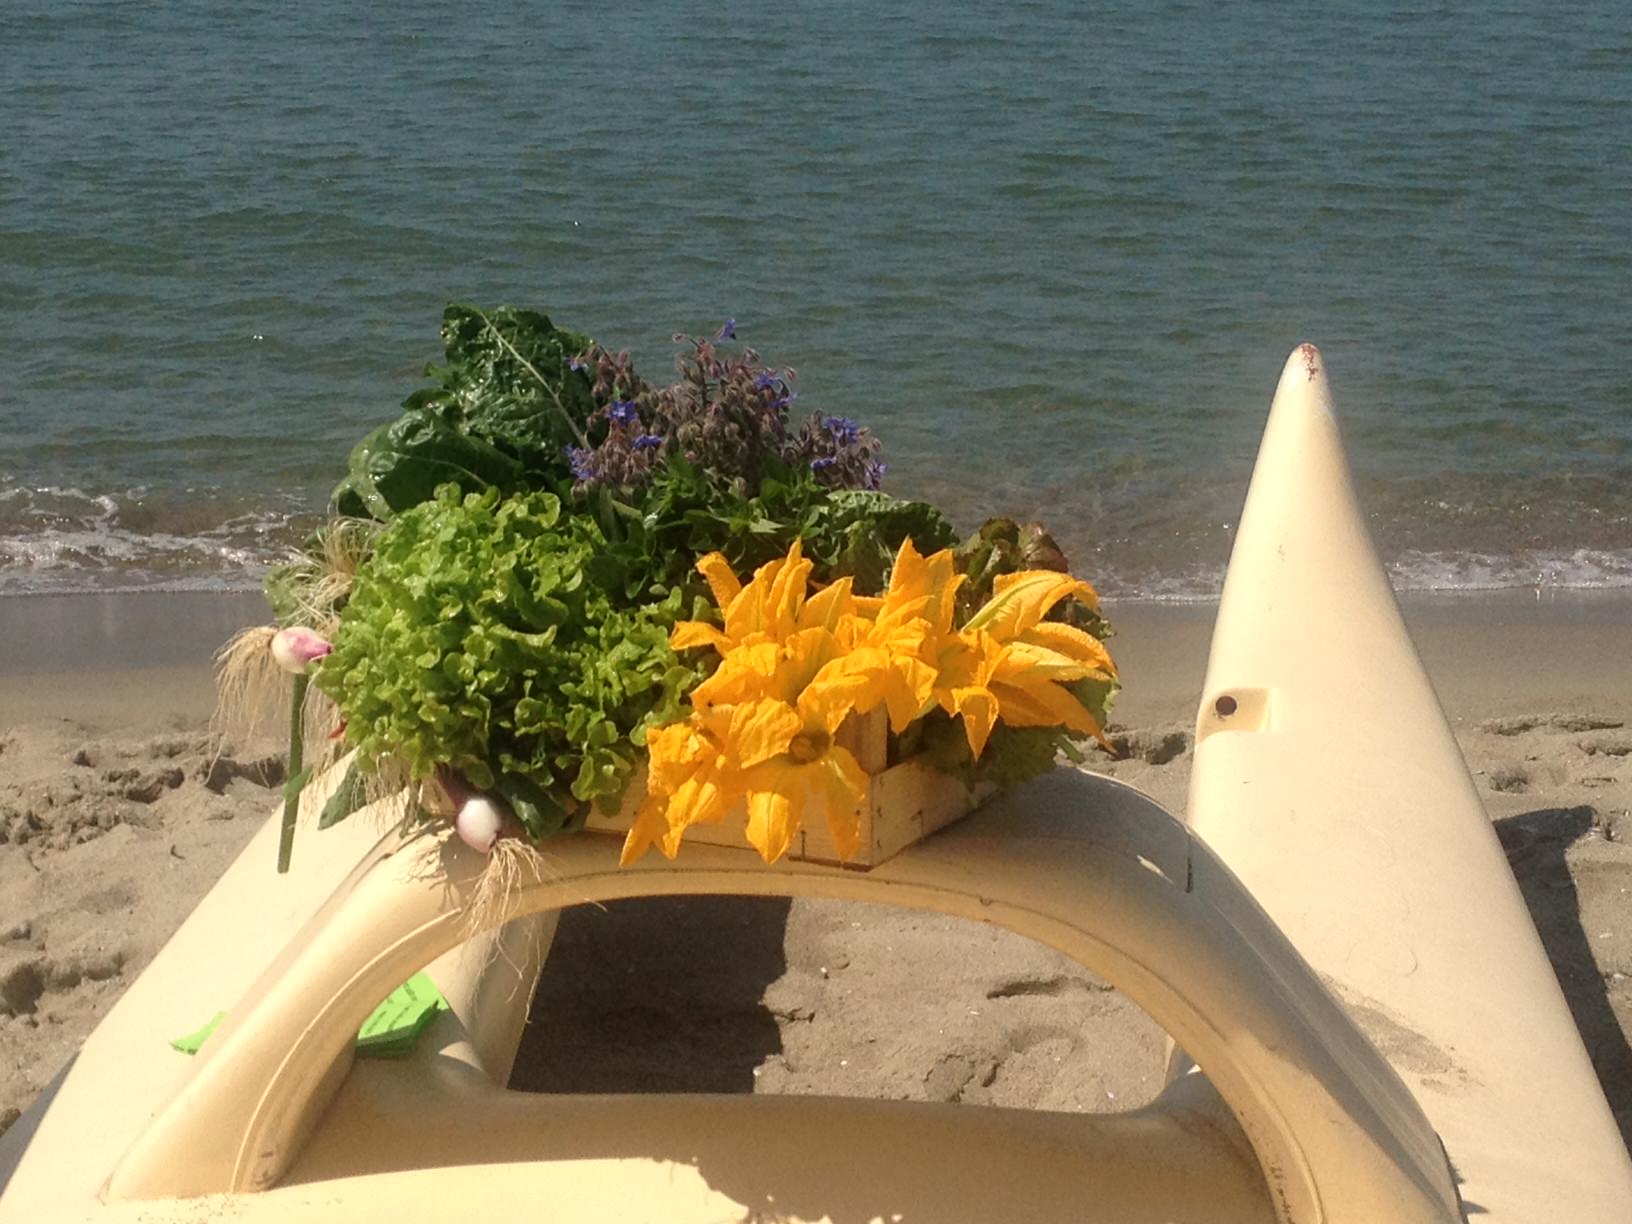 L’orto in spiaggia sbarca in RAI a “Mezzogiorno Italiano”